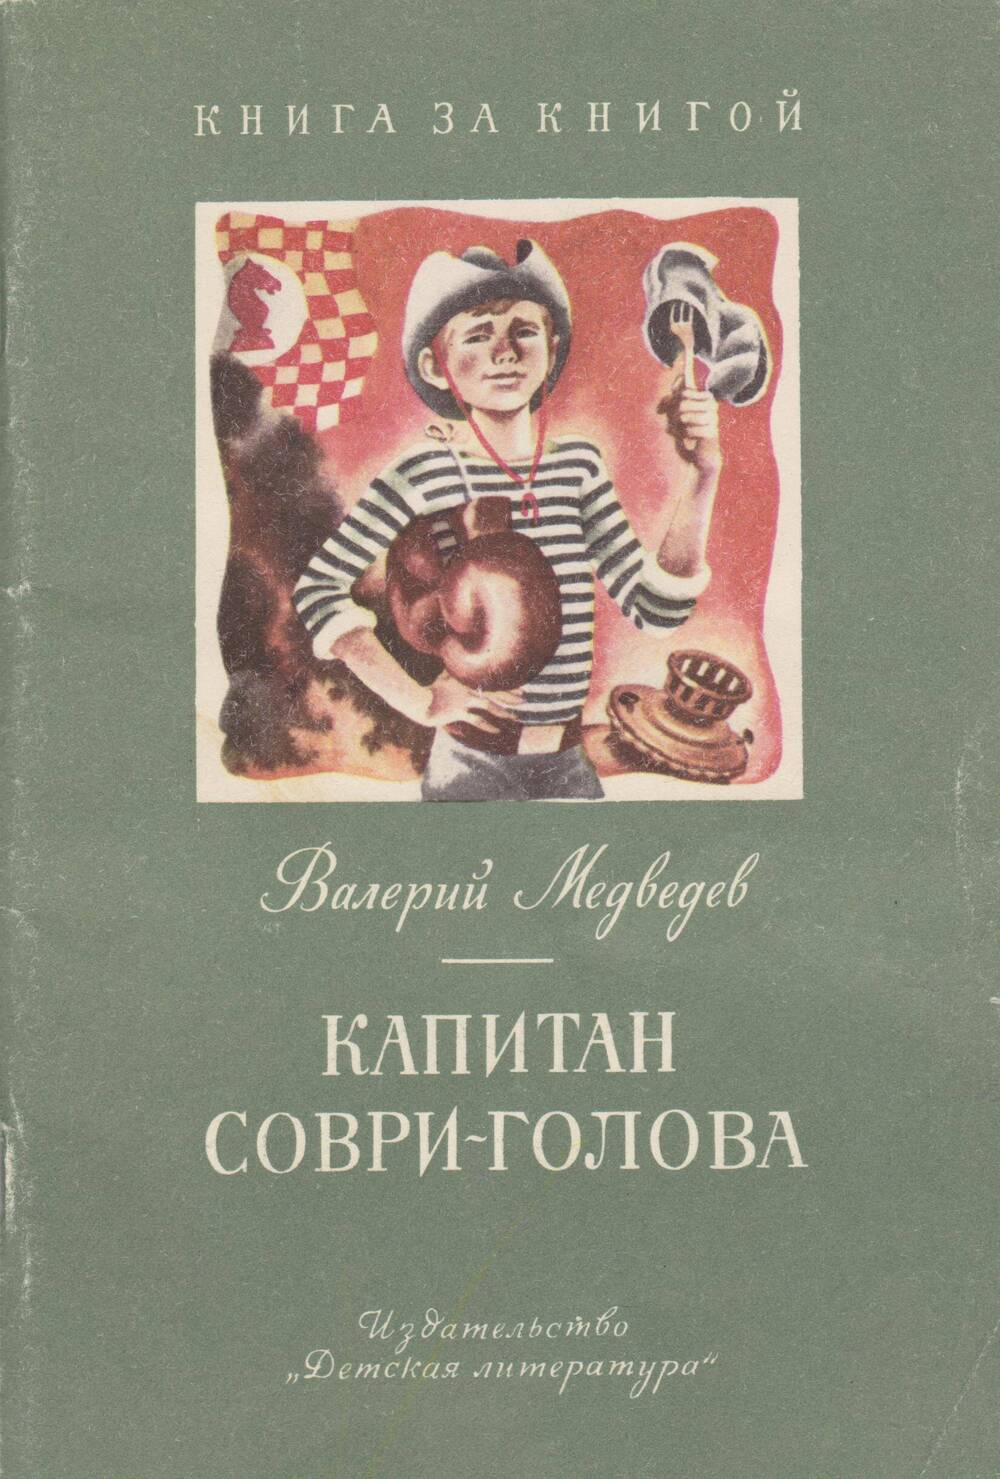 Книга «Капитан Соври-голова». Автор В. Медведев